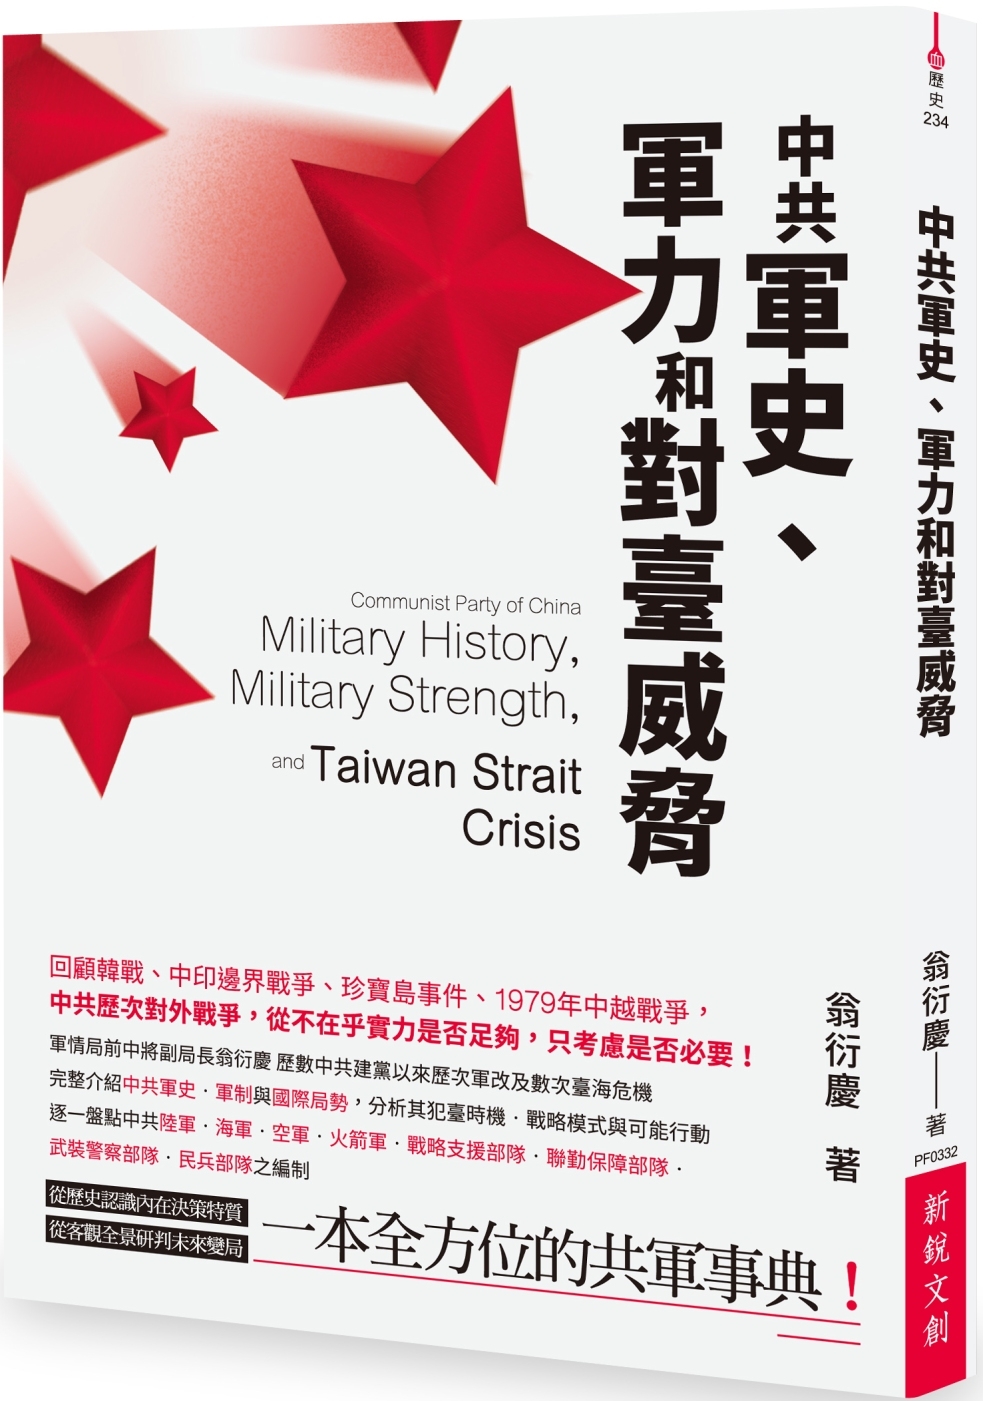 中共軍史、軍力和對臺威脅